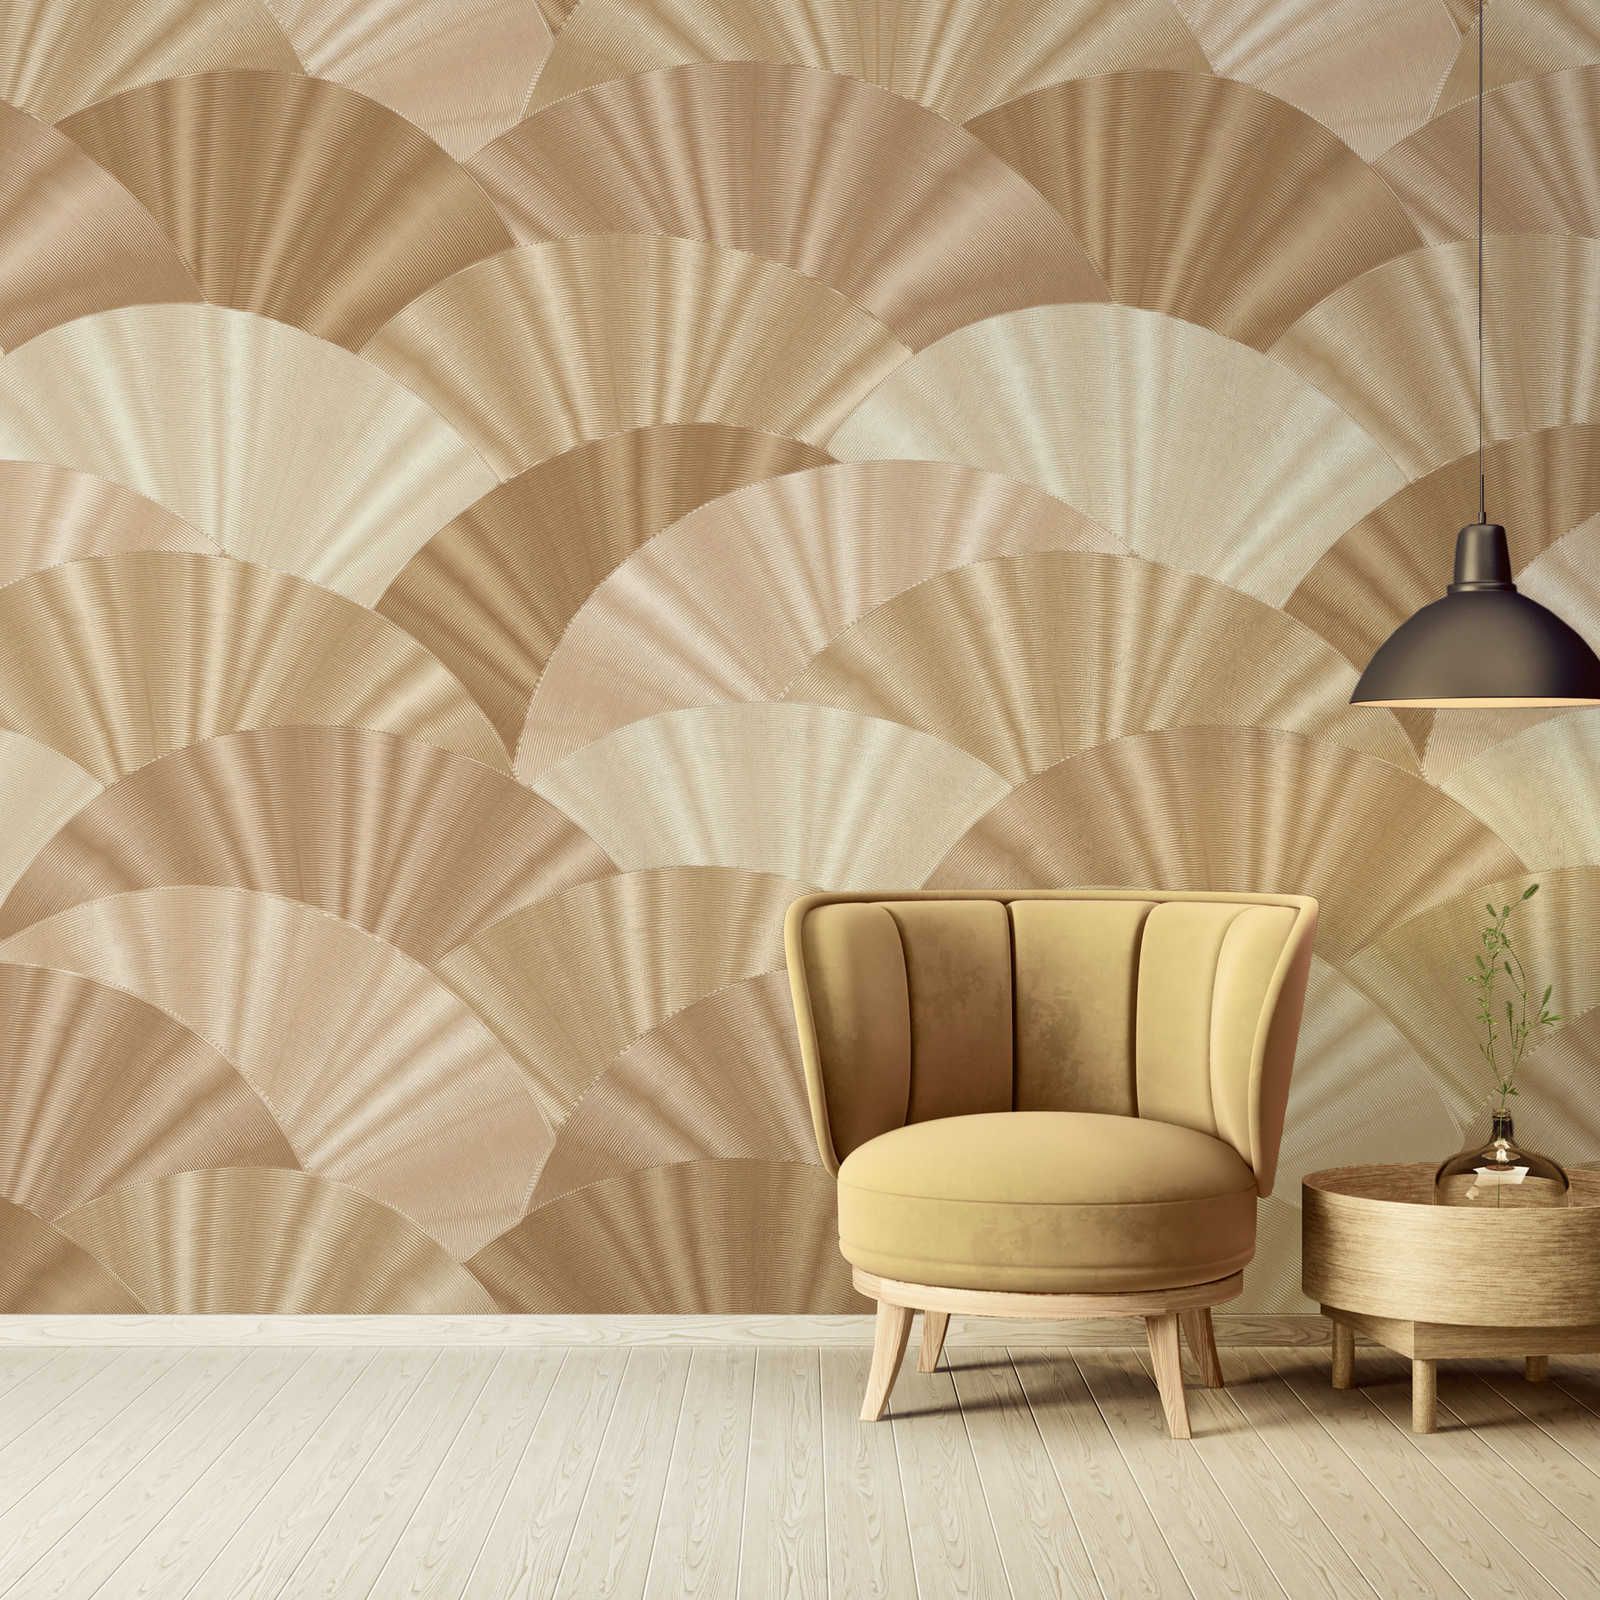 Abstract fan pattern wallpaper - gold, beige, cream
